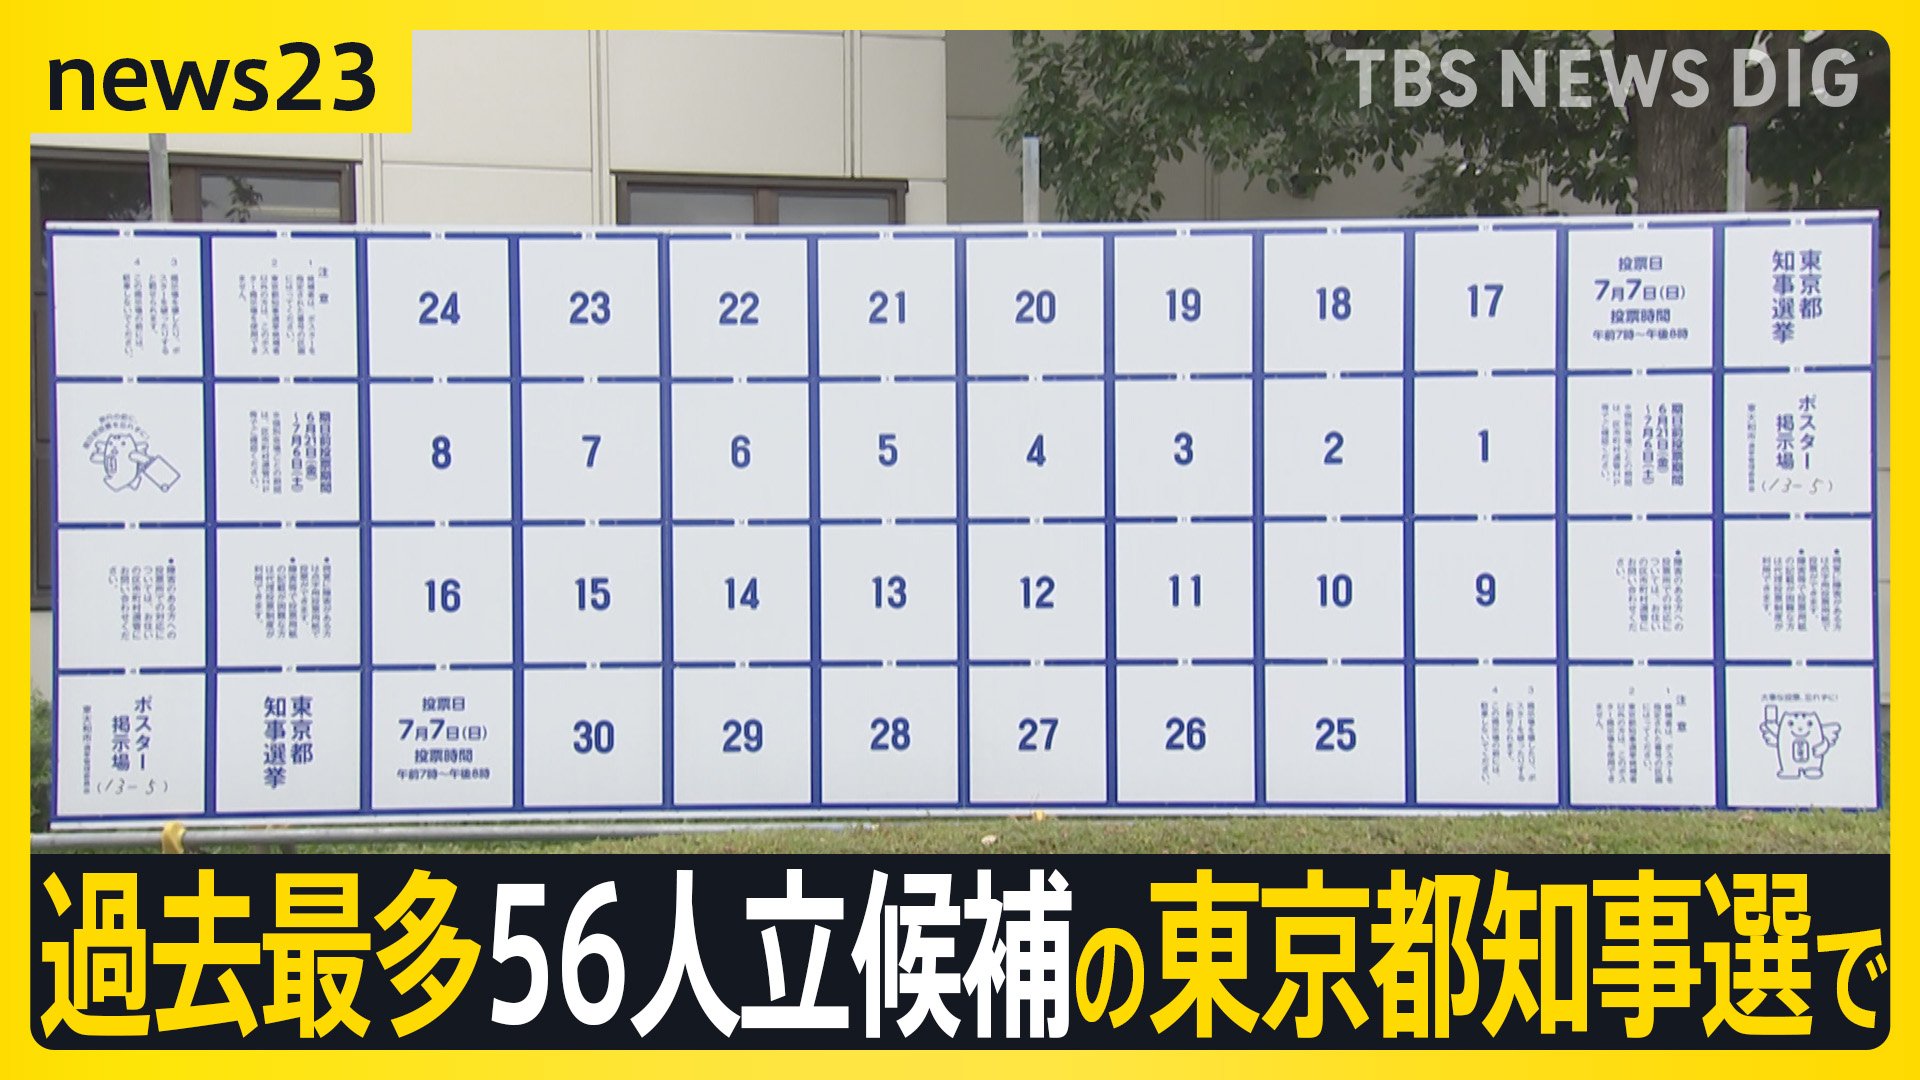 “ポスターを貼る枠が足りない”過去最多56人立候補の東京都知事選で異例の事態　候補者自らがクリアファイルで増枠も【news23】